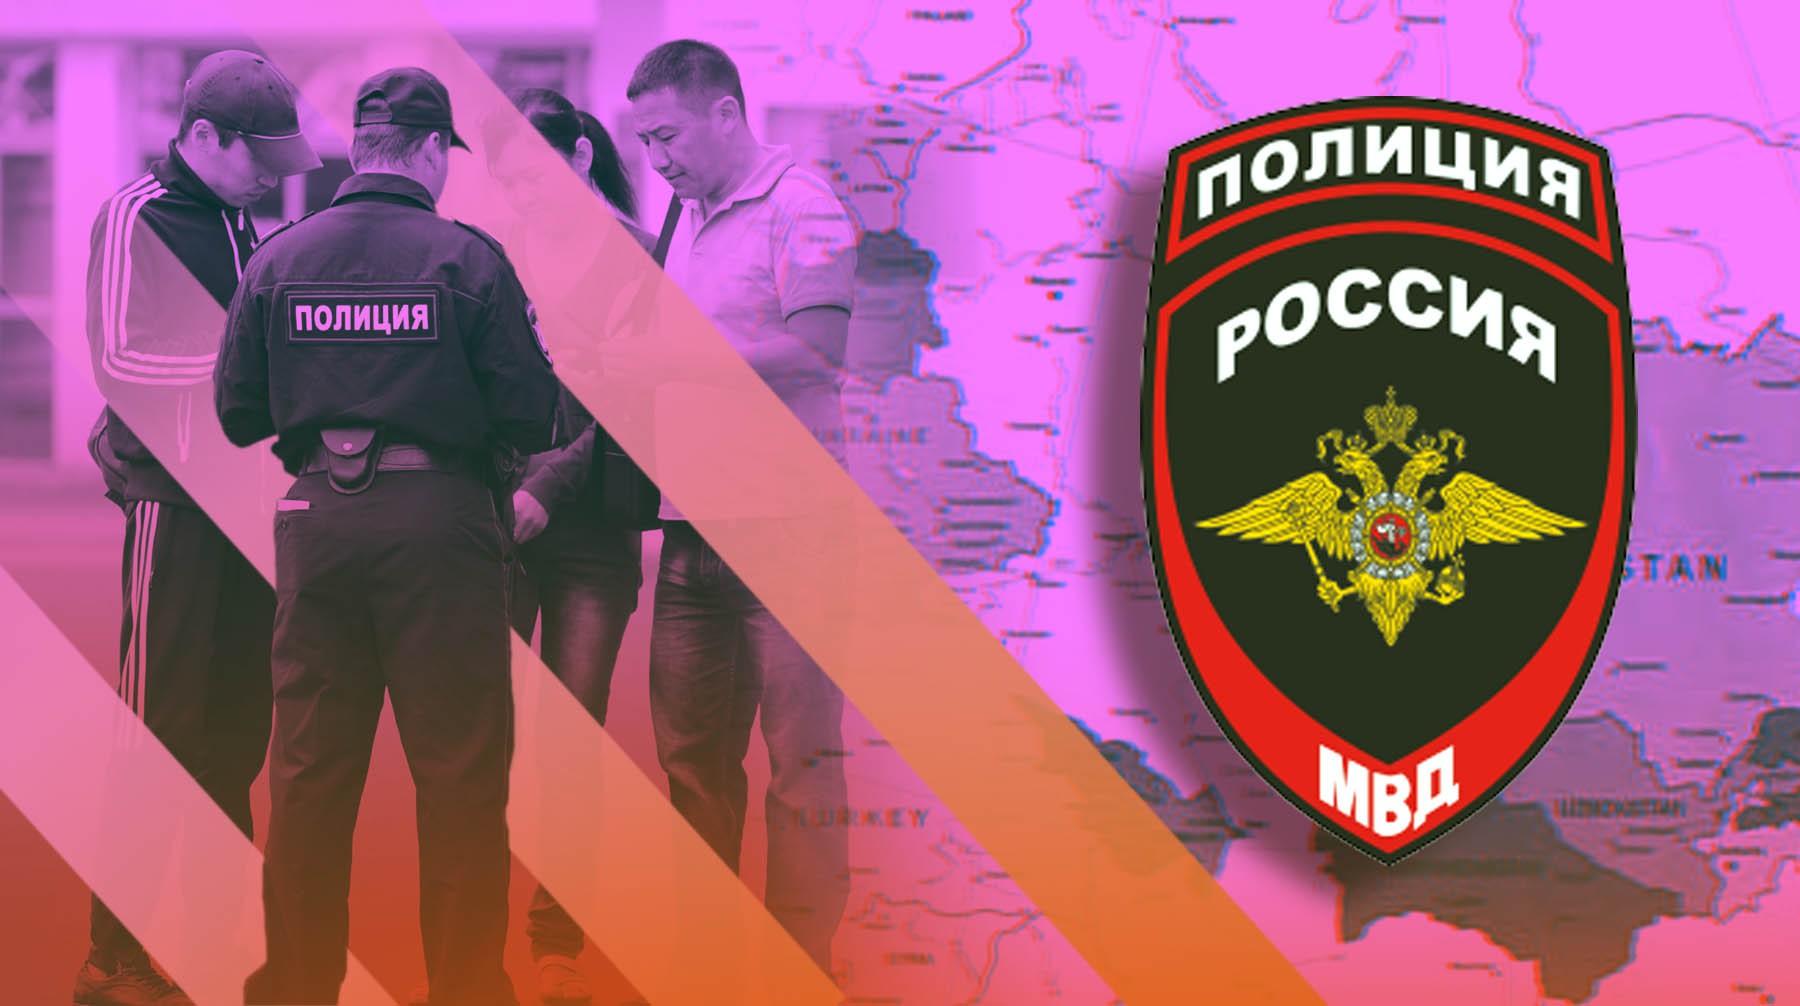 Dailystorm - В МВД России предъявили ультиматум странам СНГ по поводу мигрантов